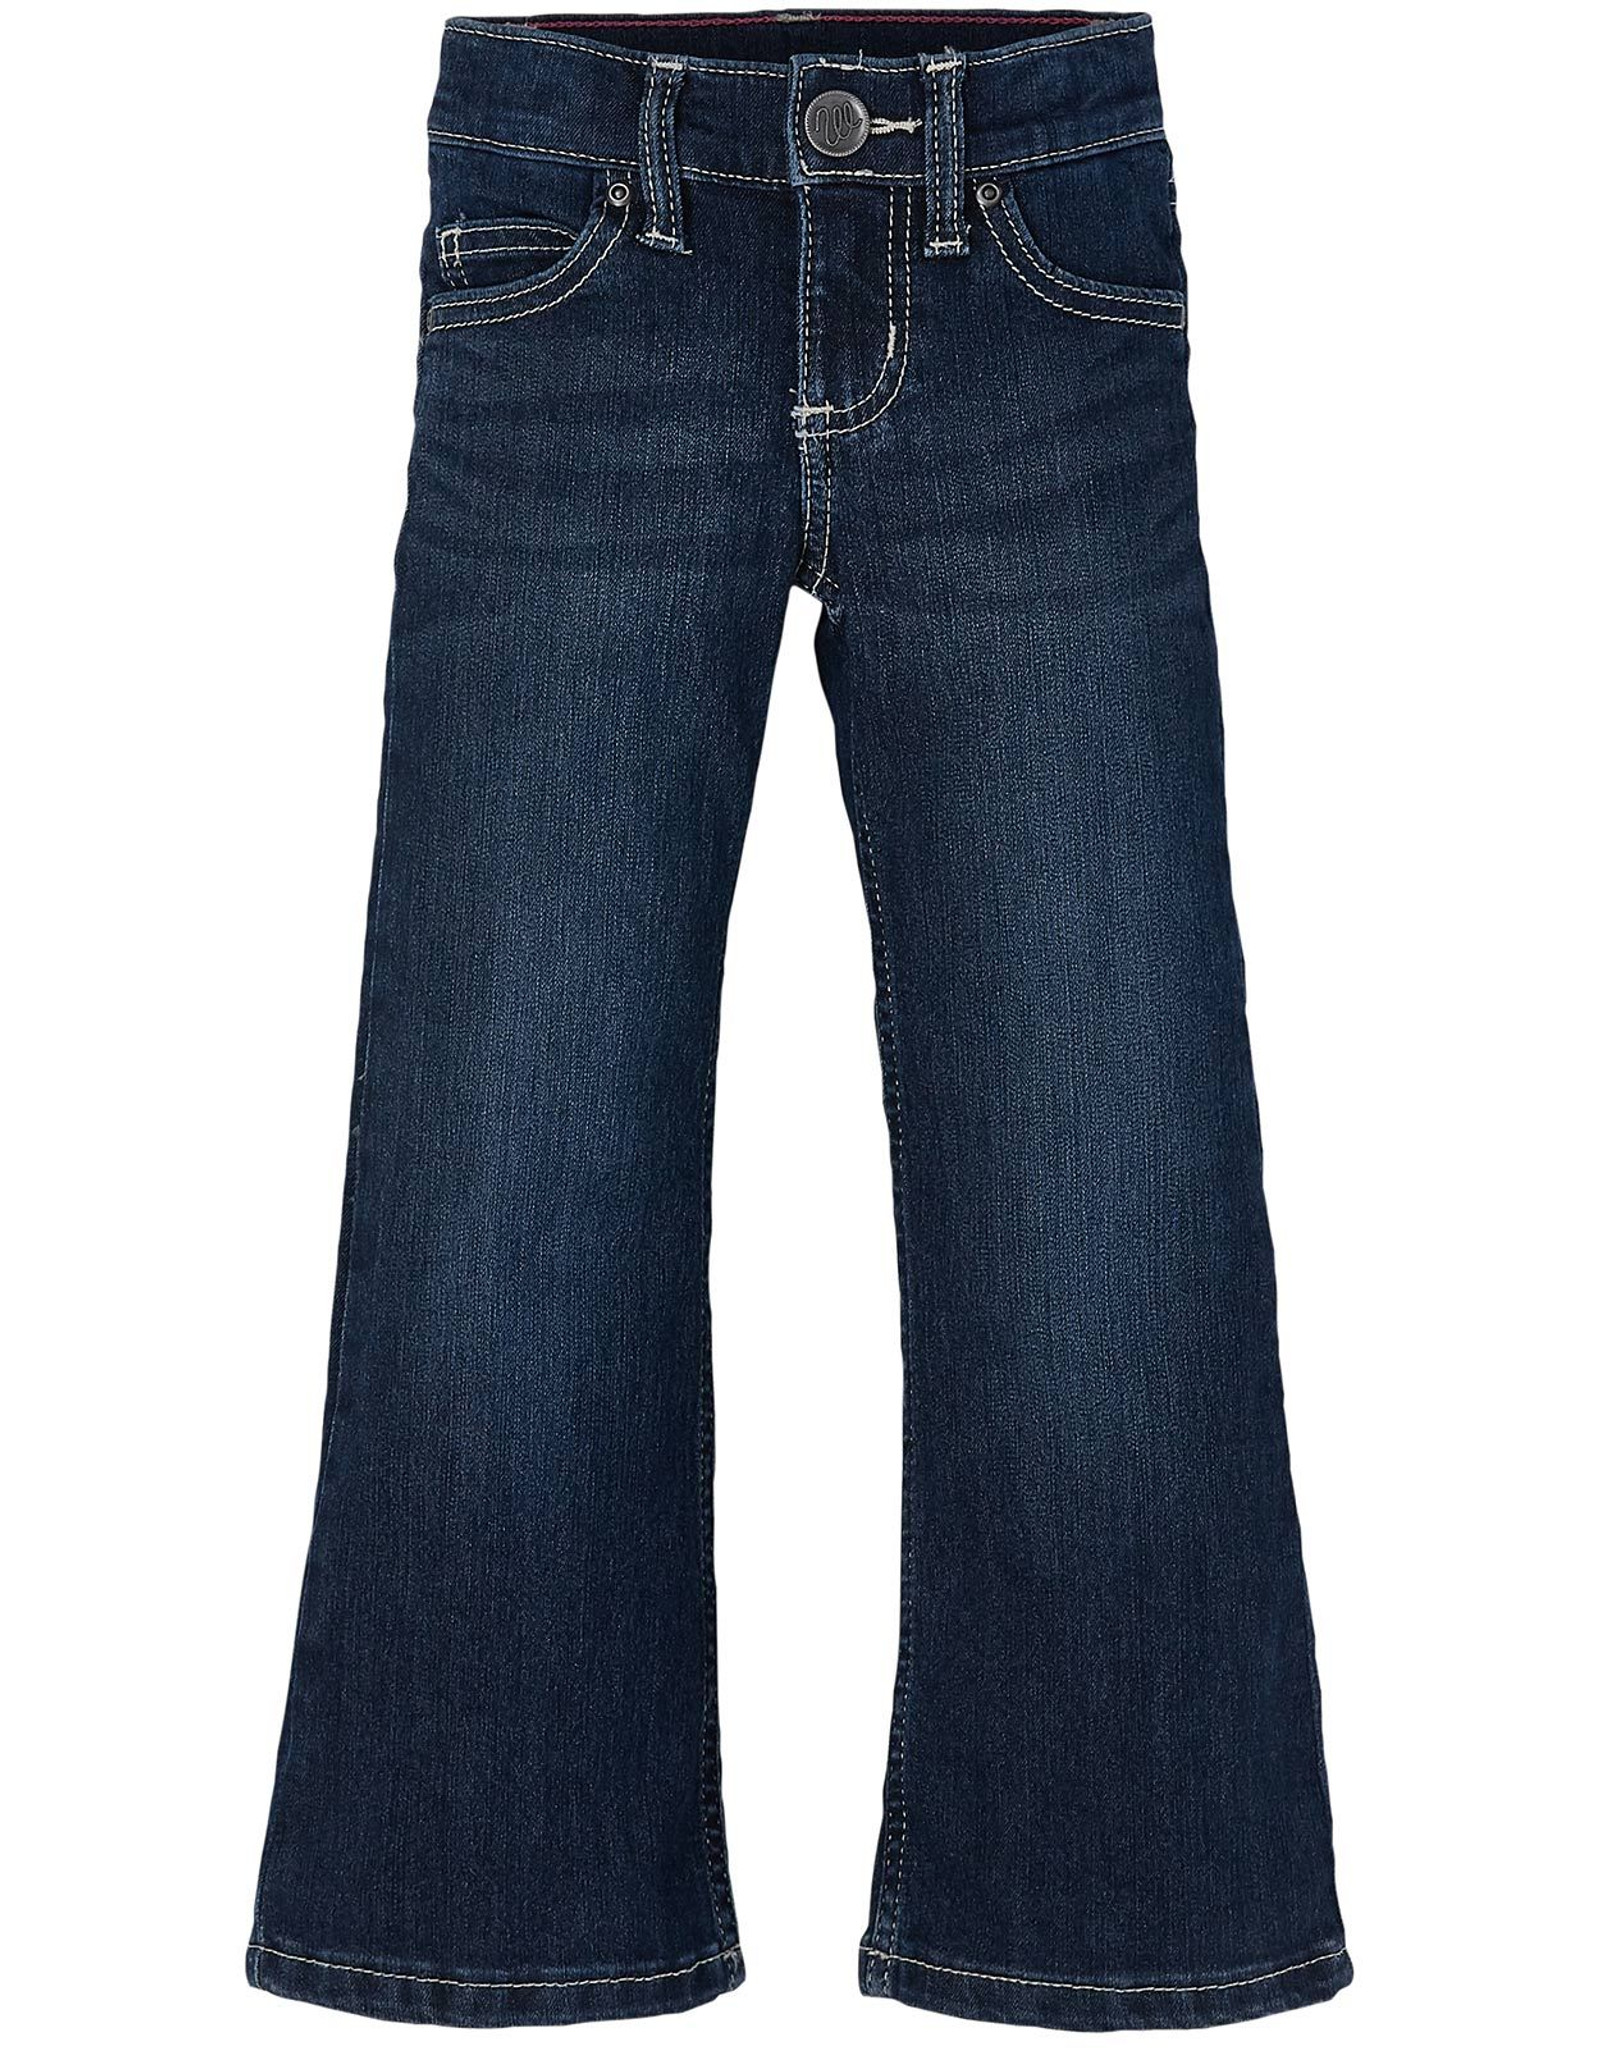 Wrangler Girls Stretch Jeans from Langston's - Dark